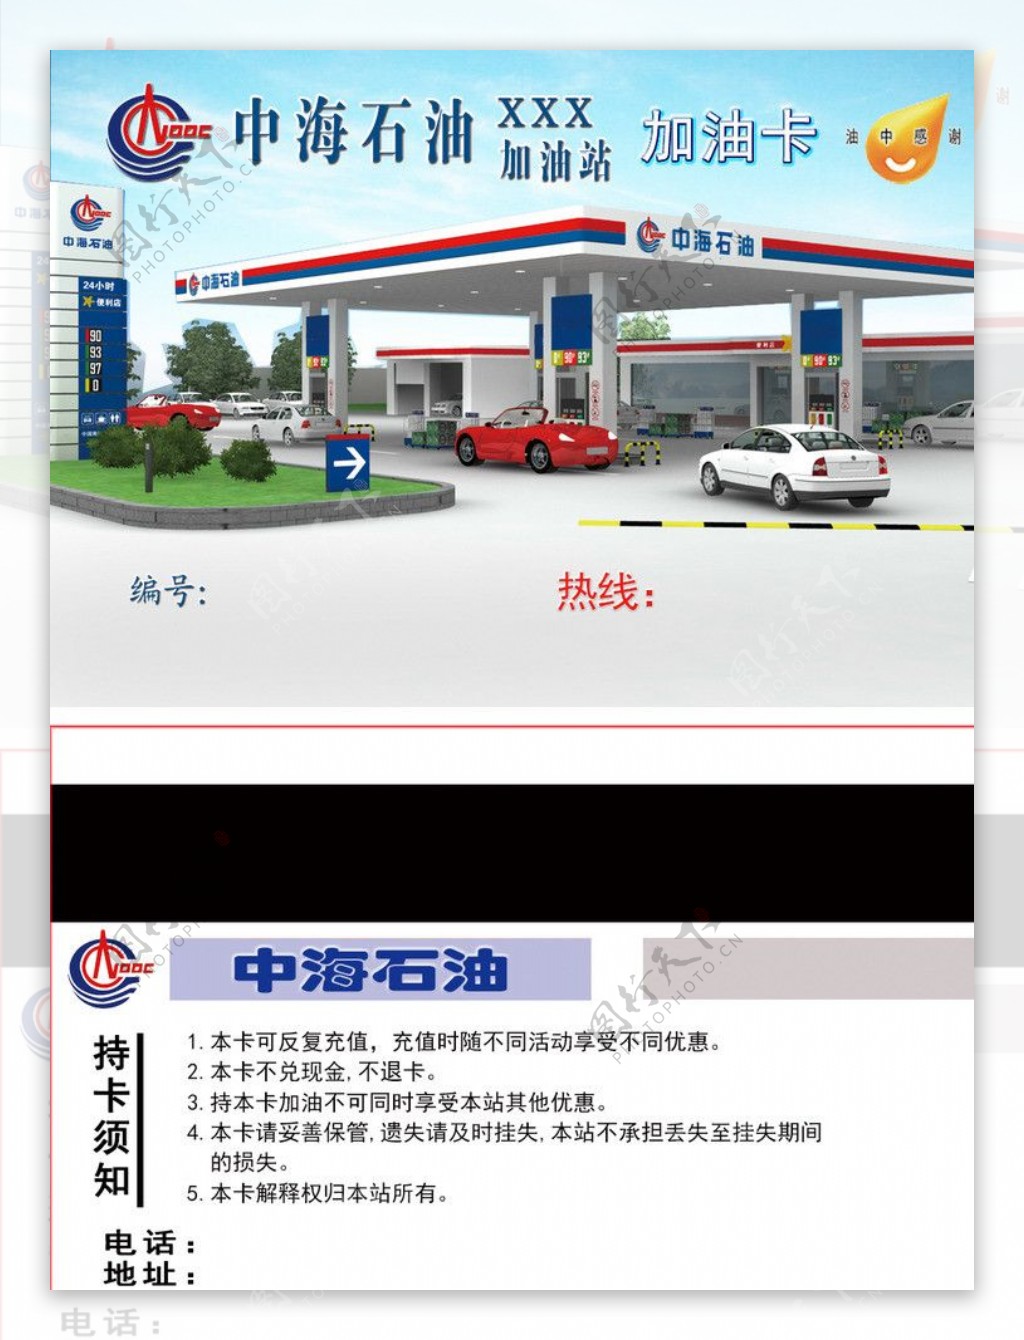 中海石油加油卡图片